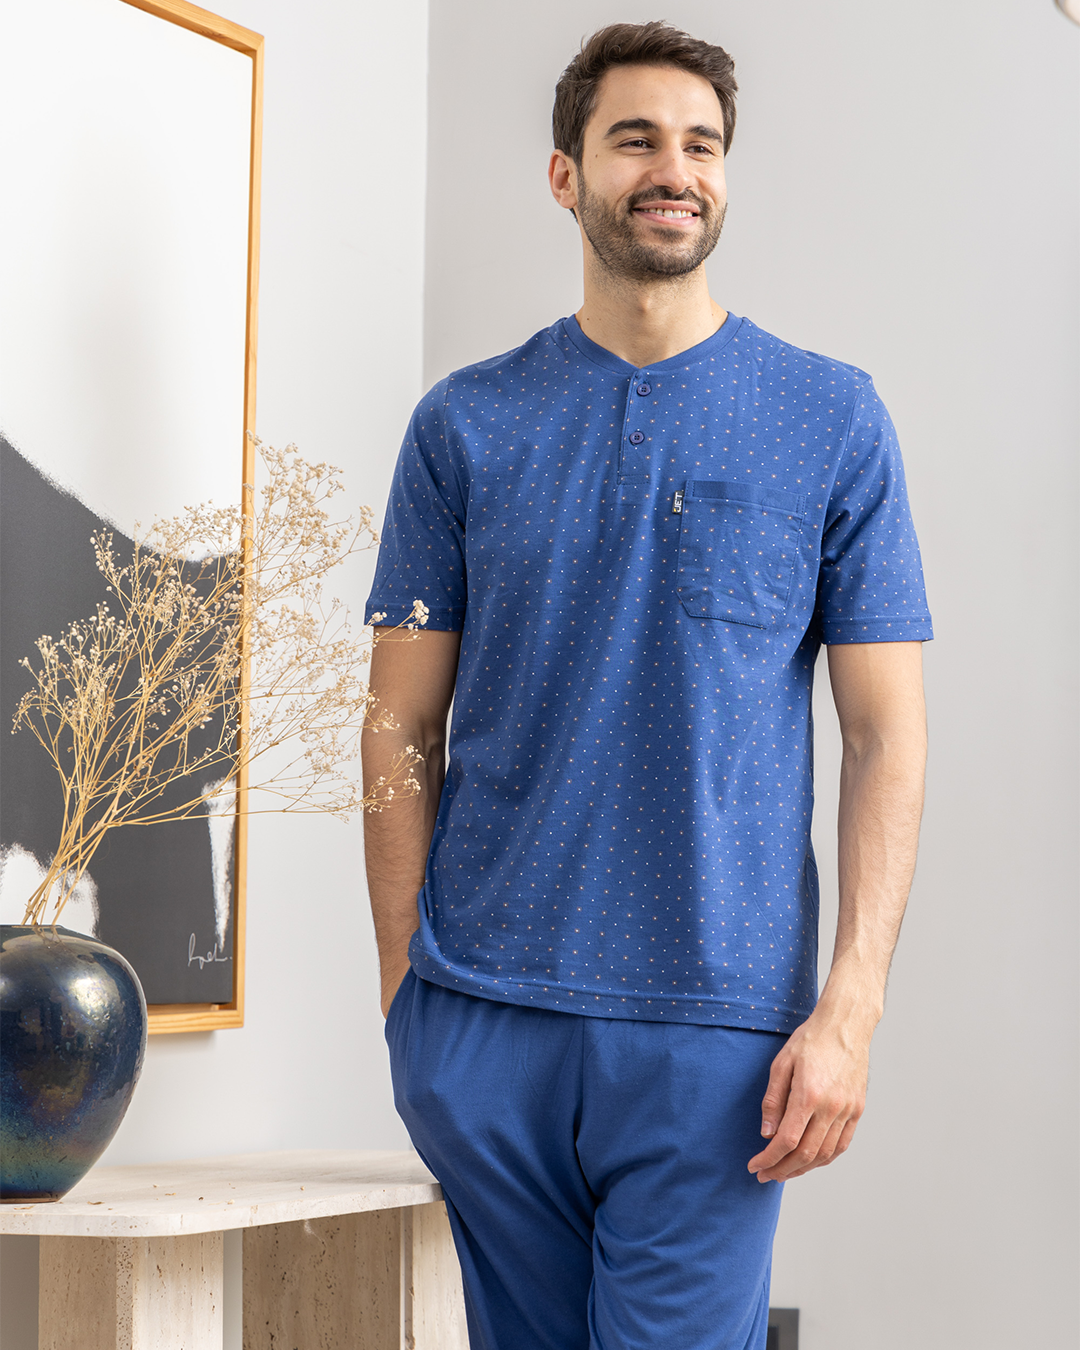 Men's pajamas, round buttons, square print, plain pants